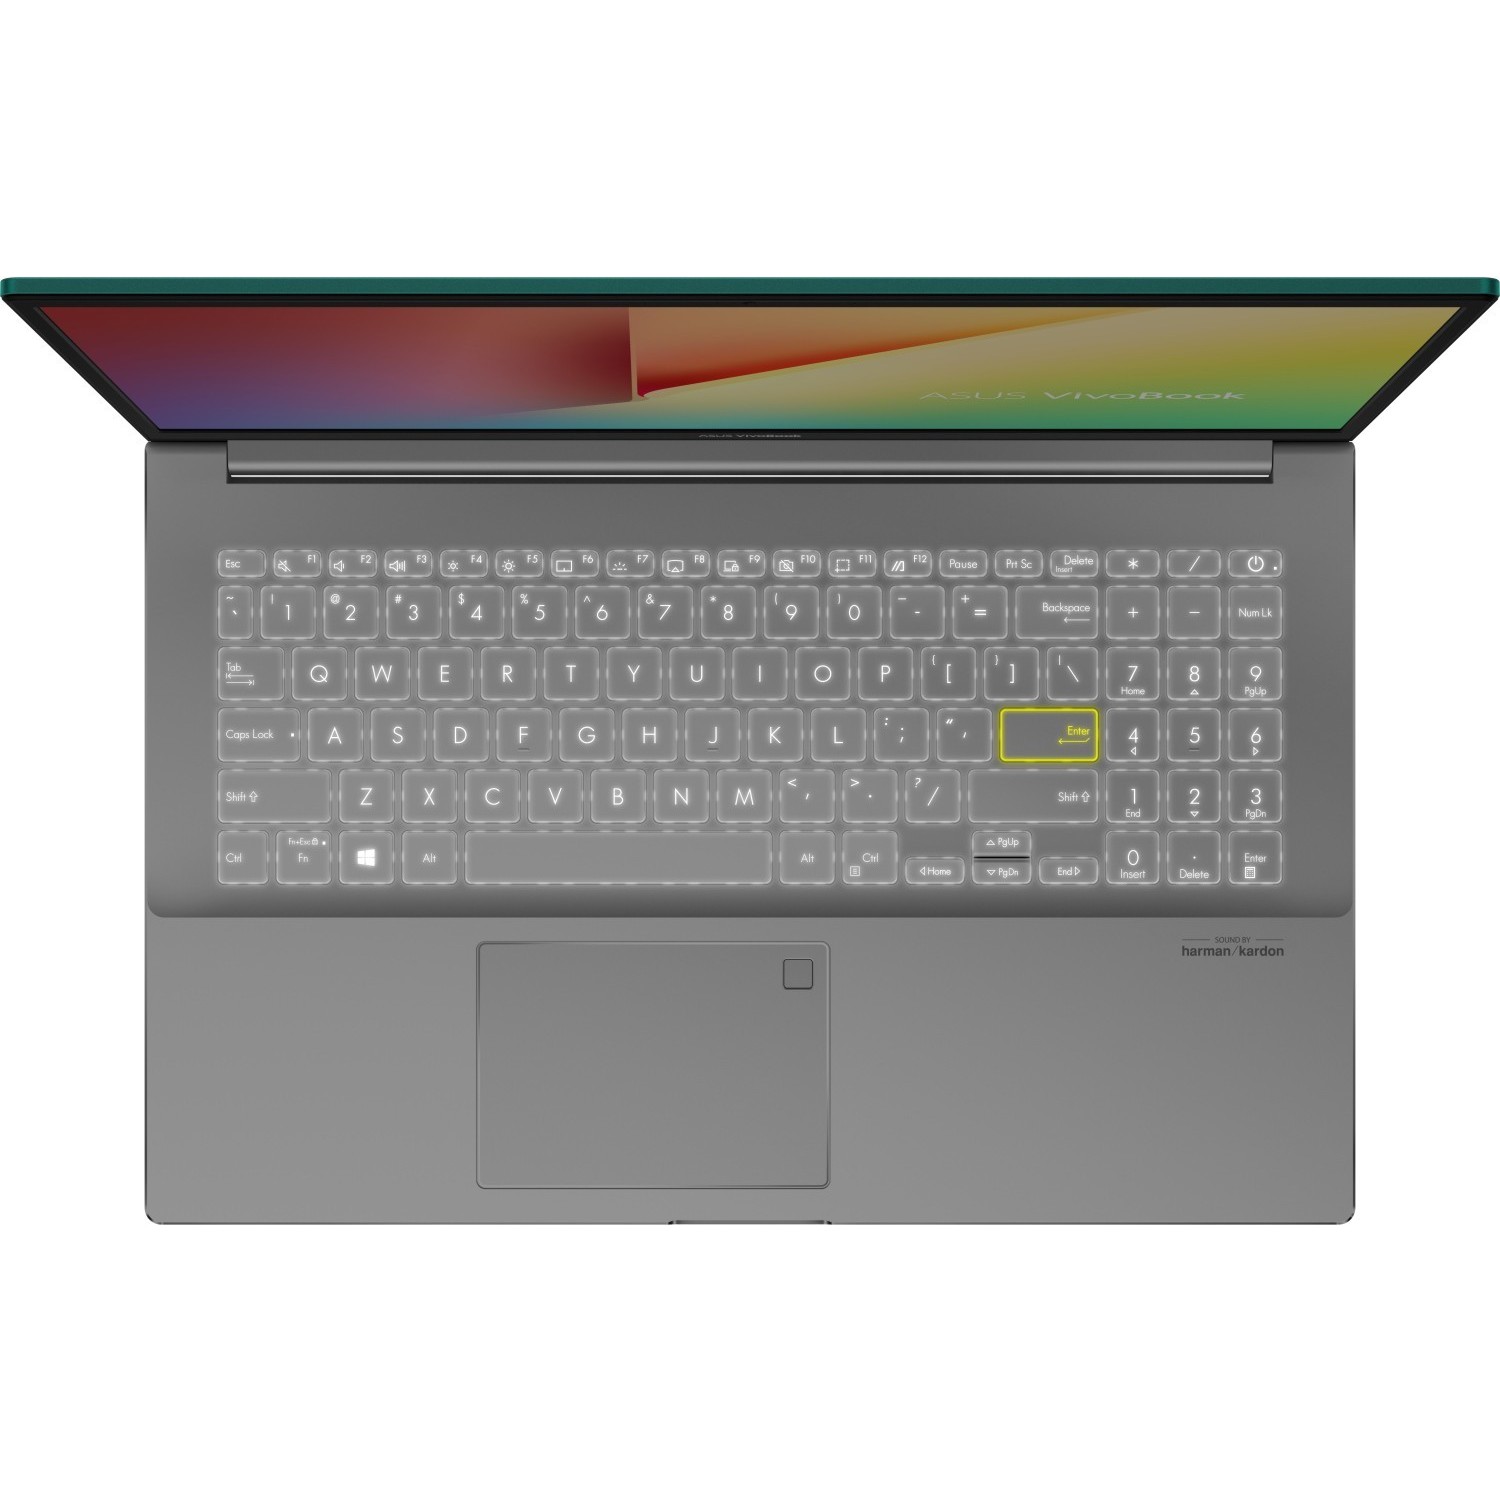 Ноутбук Asus Vivobook S15 S533eq Bn354t Купить